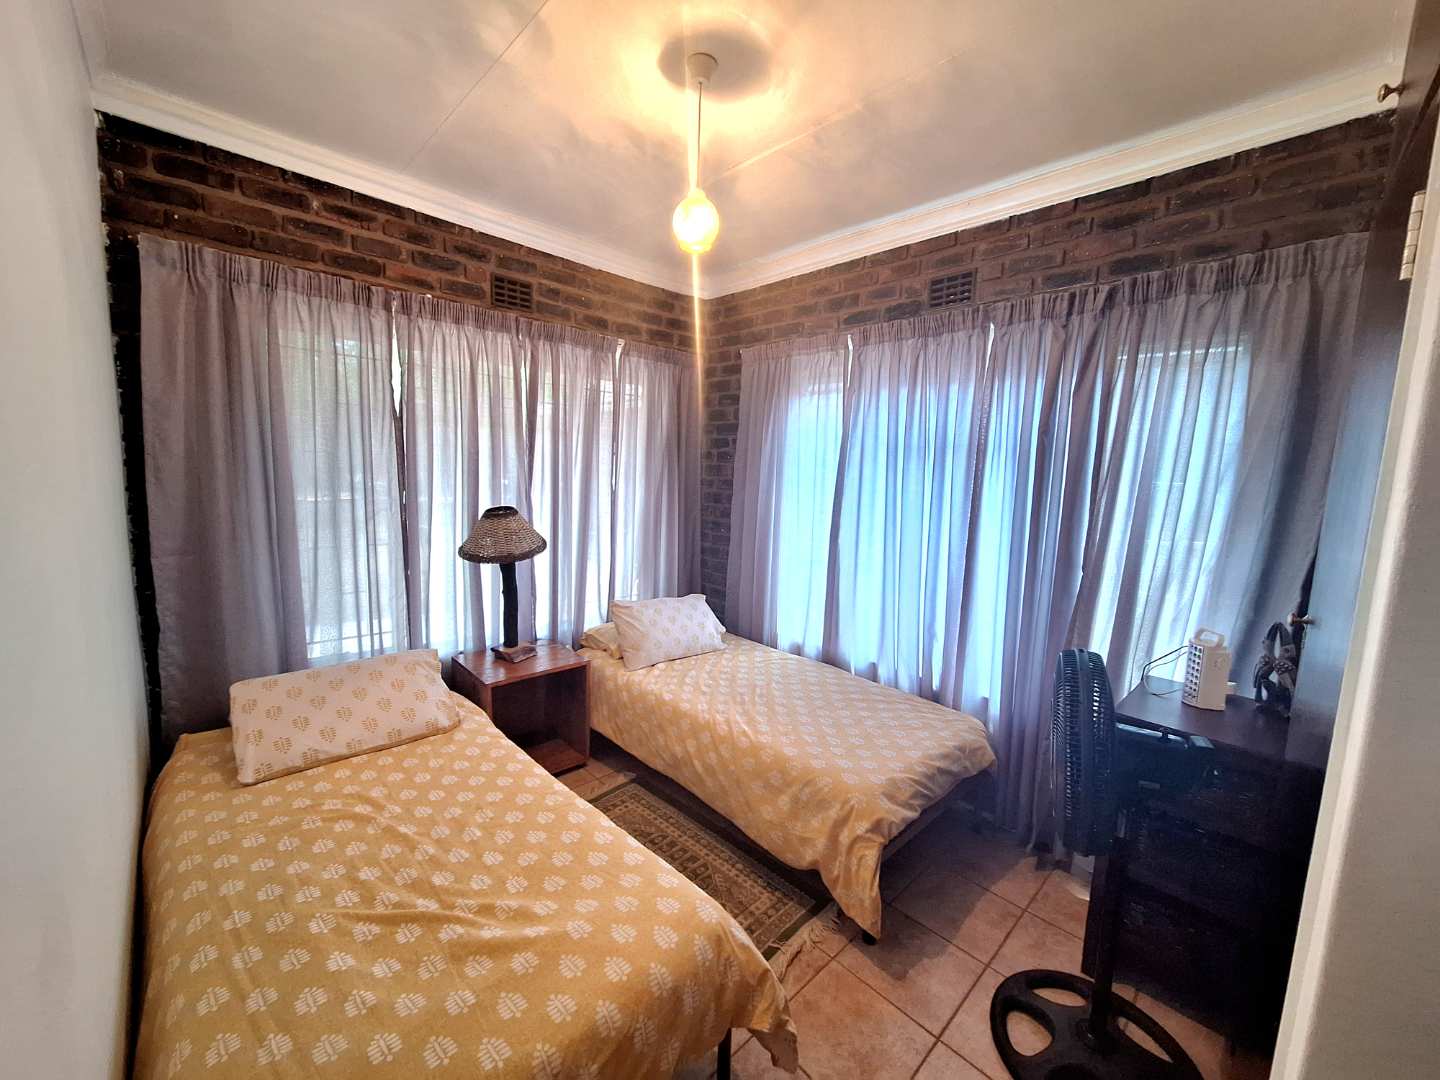 2 Bedroom Property for Sale in Leeupoort Limpopo